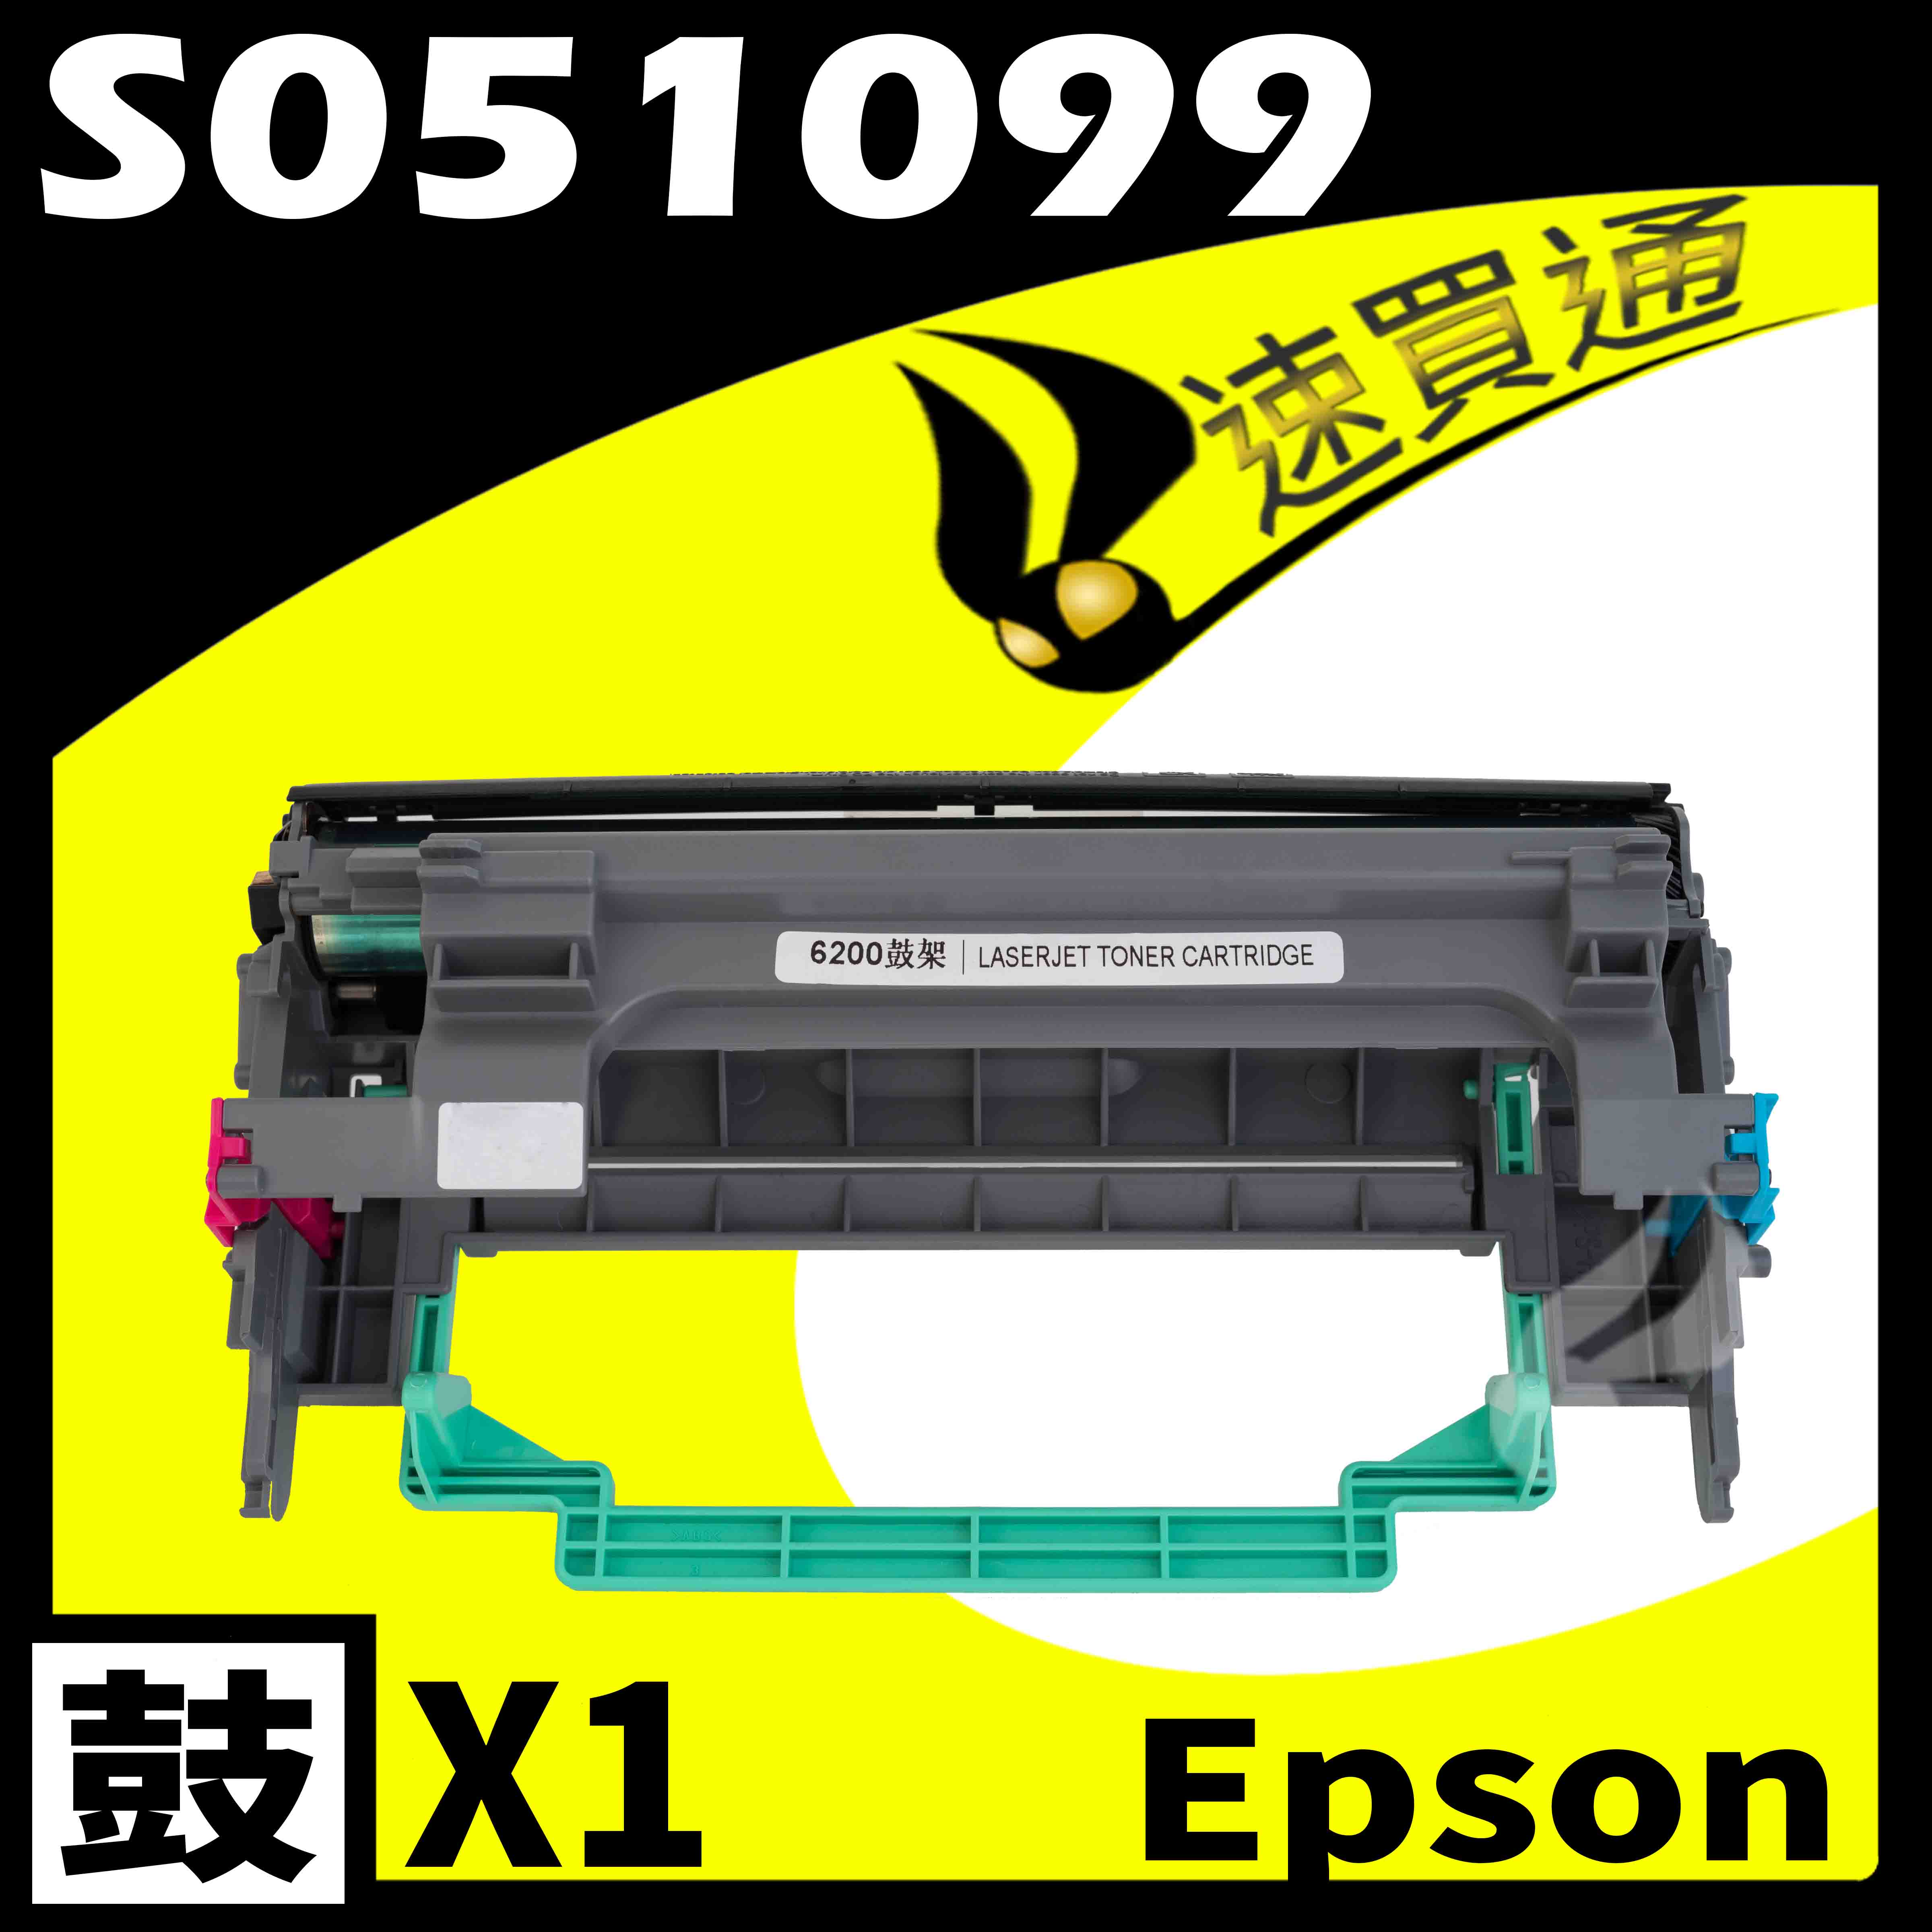 【速買通】EPSON 6200/6200L/S051099 相容光鼓匣 適用 EPL-6200/6200L/M1200